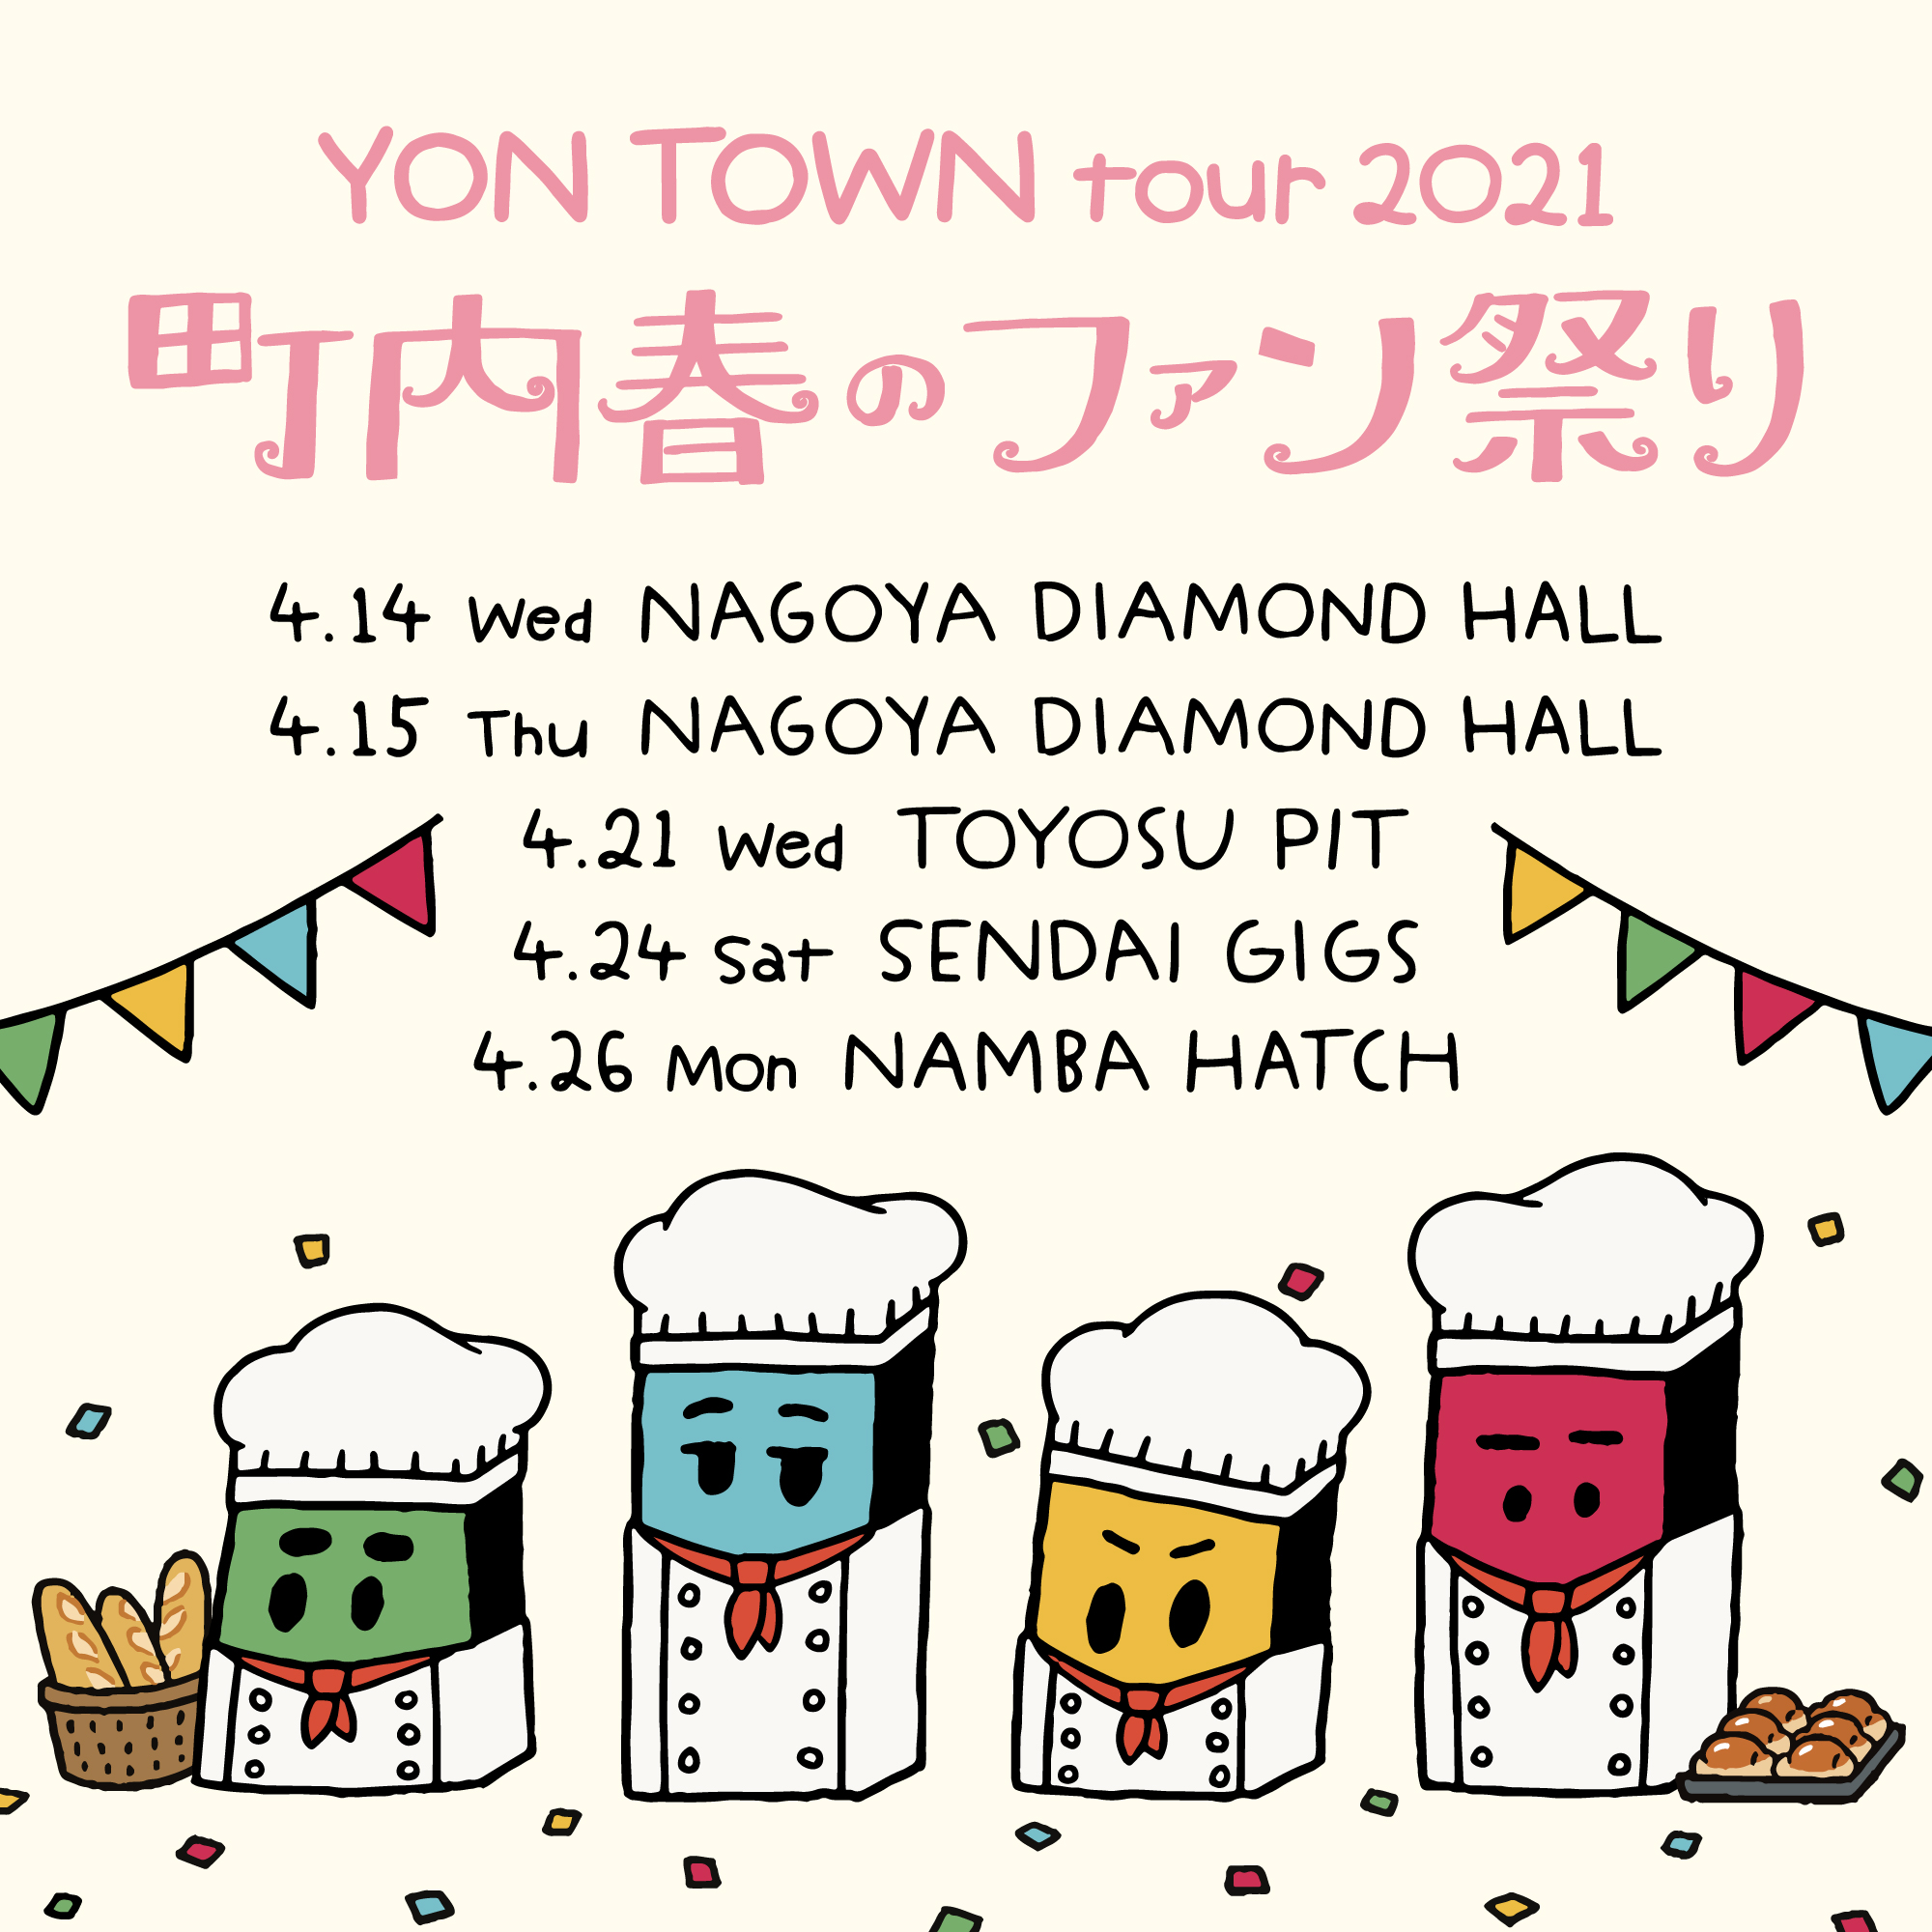 【愛知】YON TOWN tour 2021 〜町内春のファン祭り〜 (名古屋DIAMOND HALL)